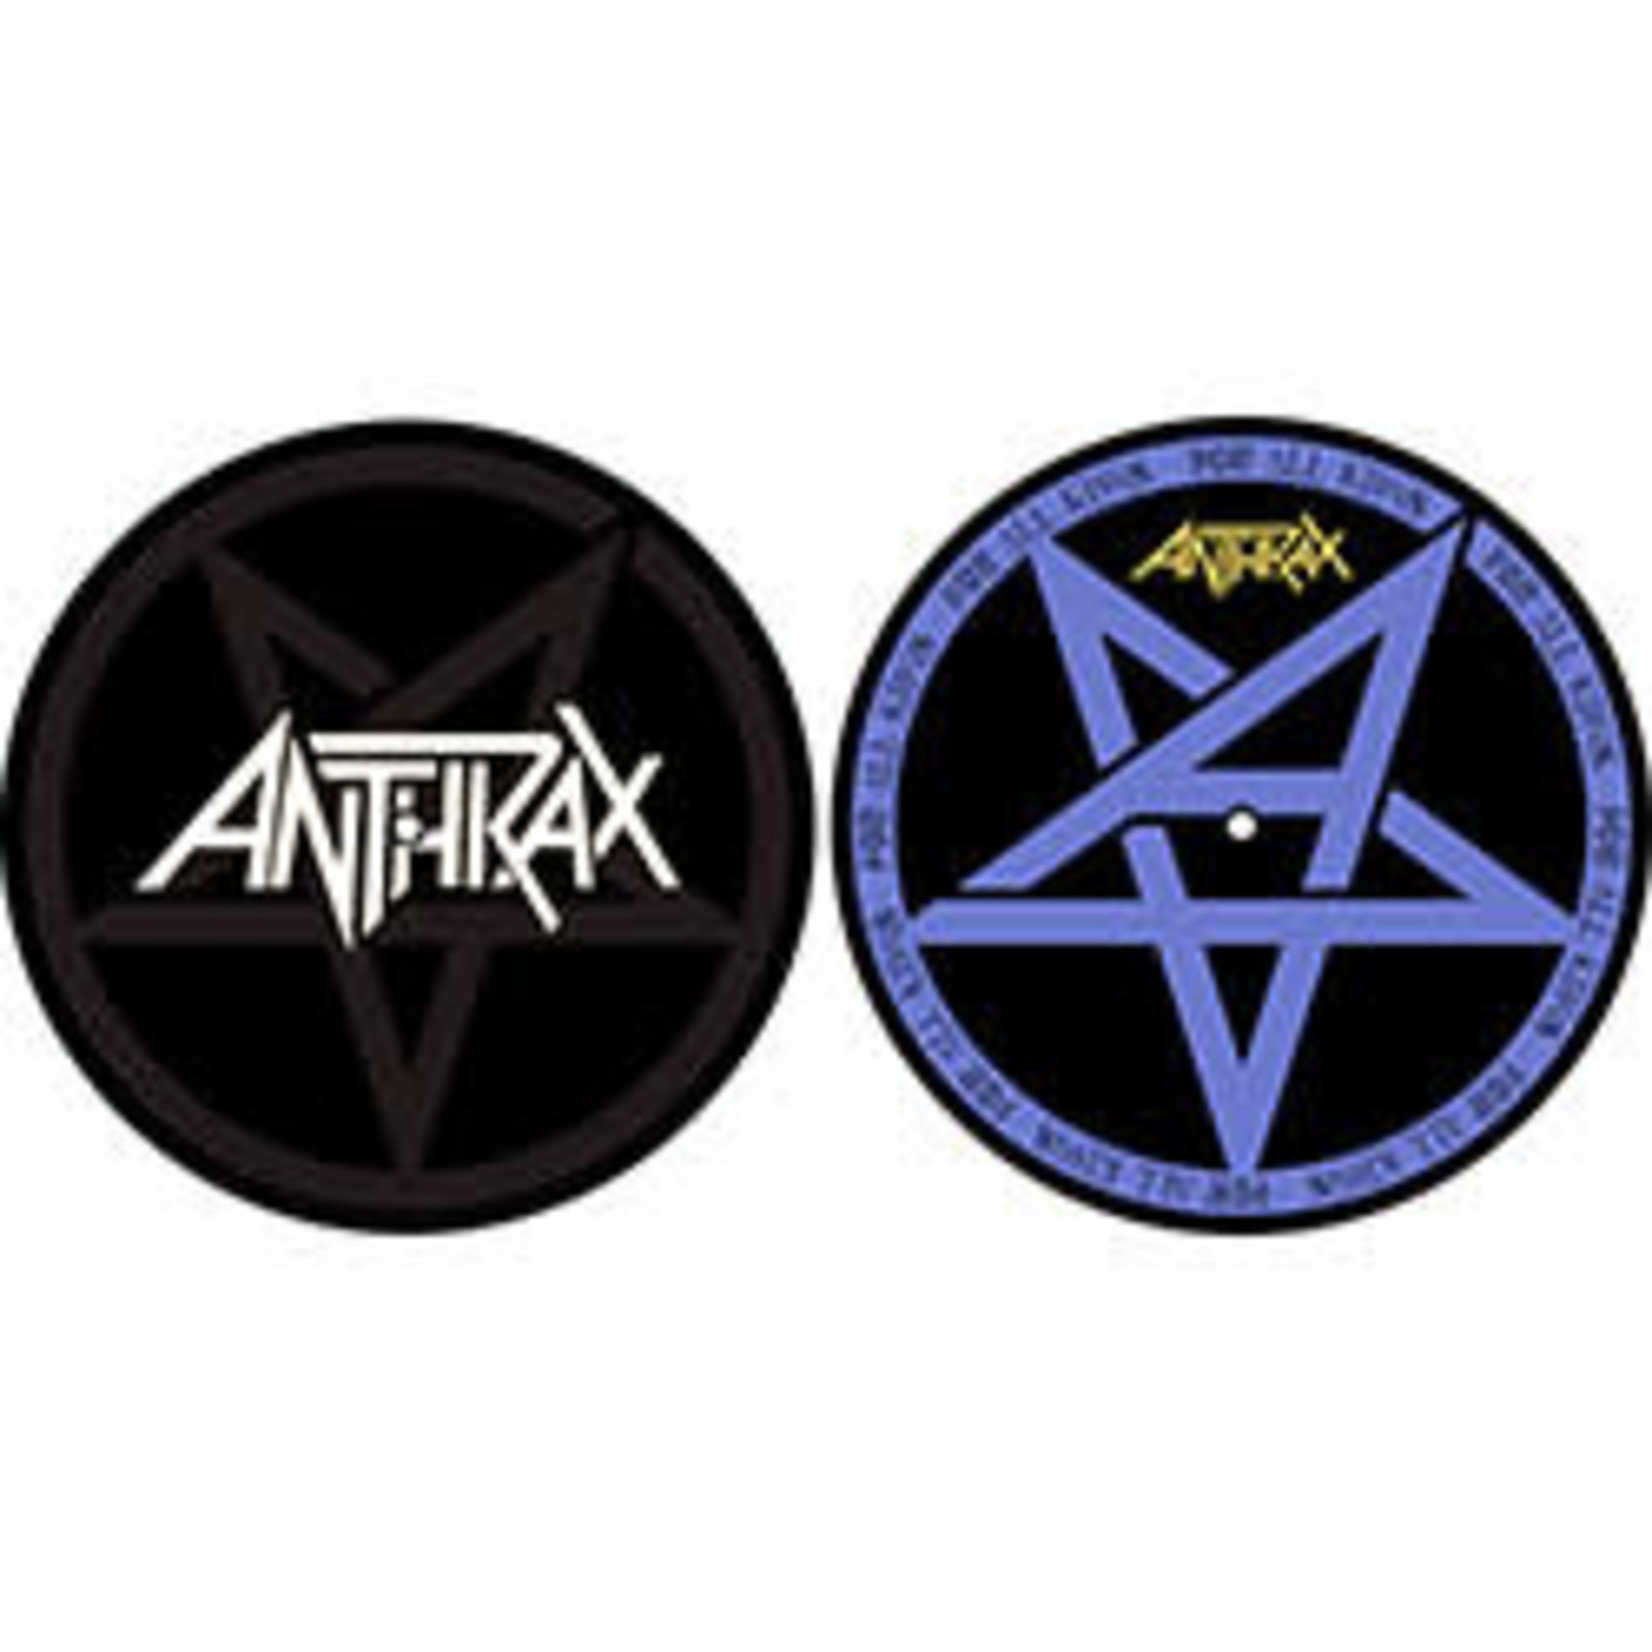 Slipmat - Anthrax: Pentathrax / For All Kings